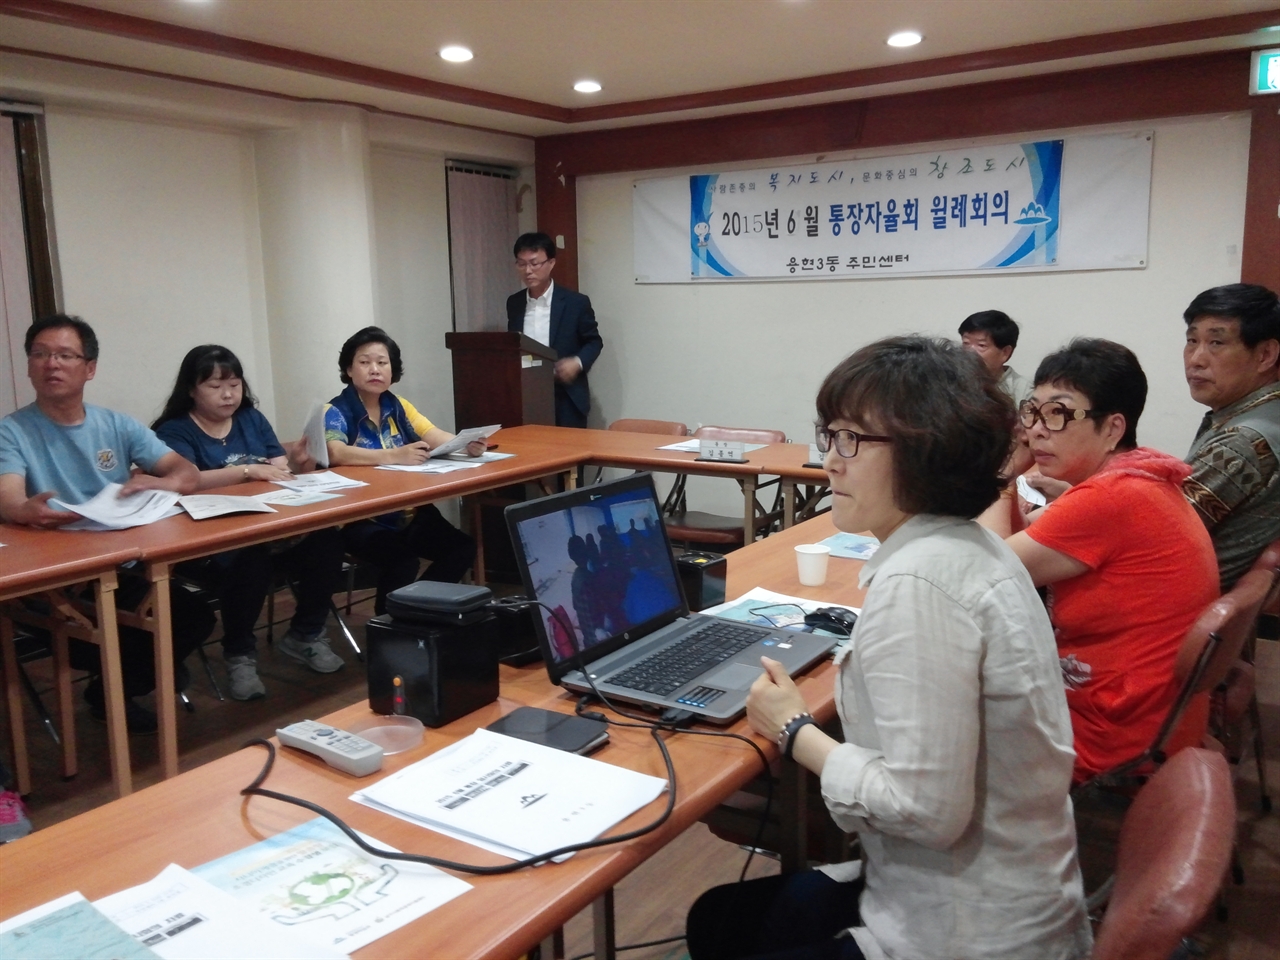 지난해 '마을극장' 작품 상영에 이어 달라진 2015주안미디어문화축제에 대해 듣고 있는 주민들.